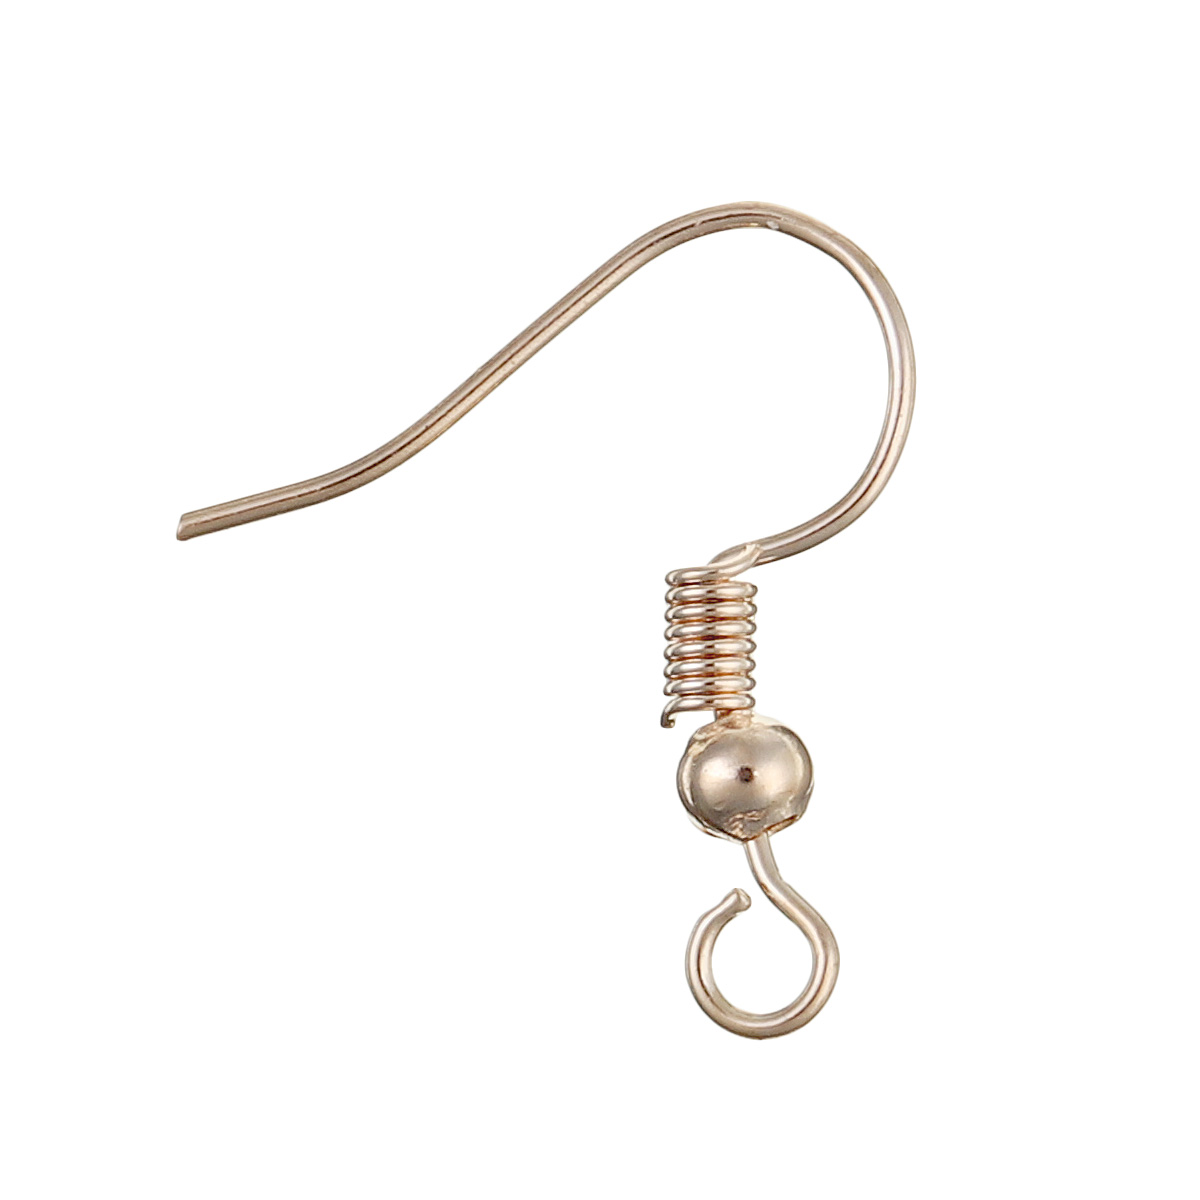 Necklace-Bracelet-Earrings-Set-Jewelry-DIY-Making-Kit-Handmade-Jewelry-Making-1735464